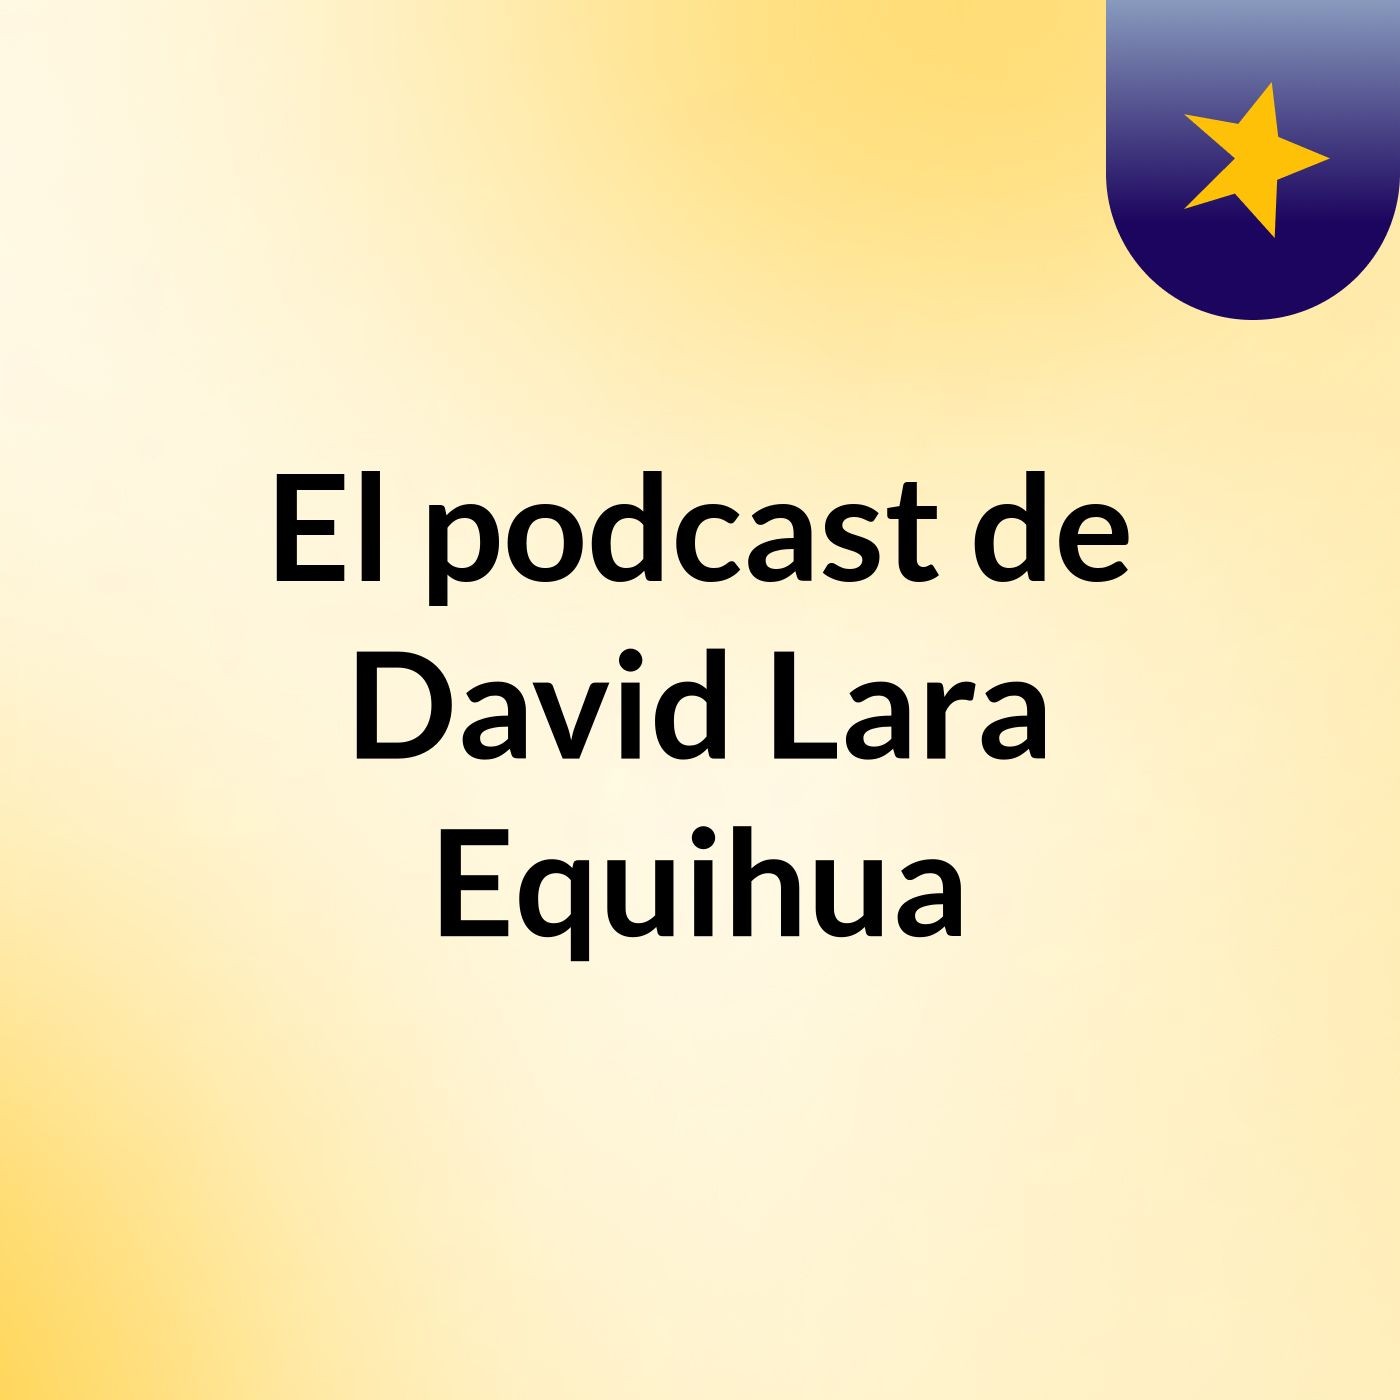 El podcast de David Lara Equihua